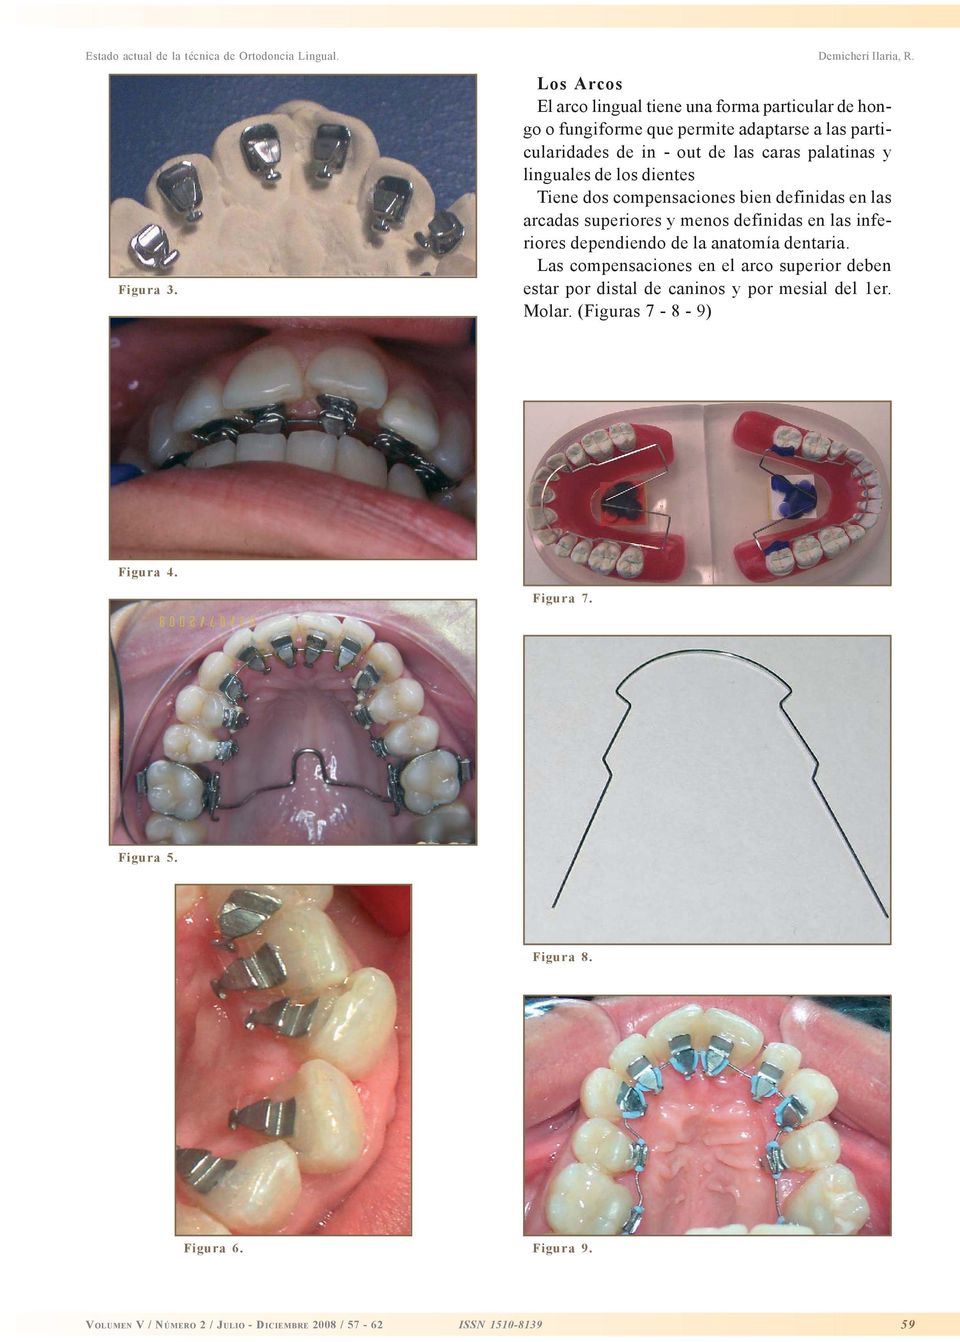 palatinas y linguales de los dientes Tiene dos compensaciones bien definidas en las arcadas superiores y menos definidas en las inferiores